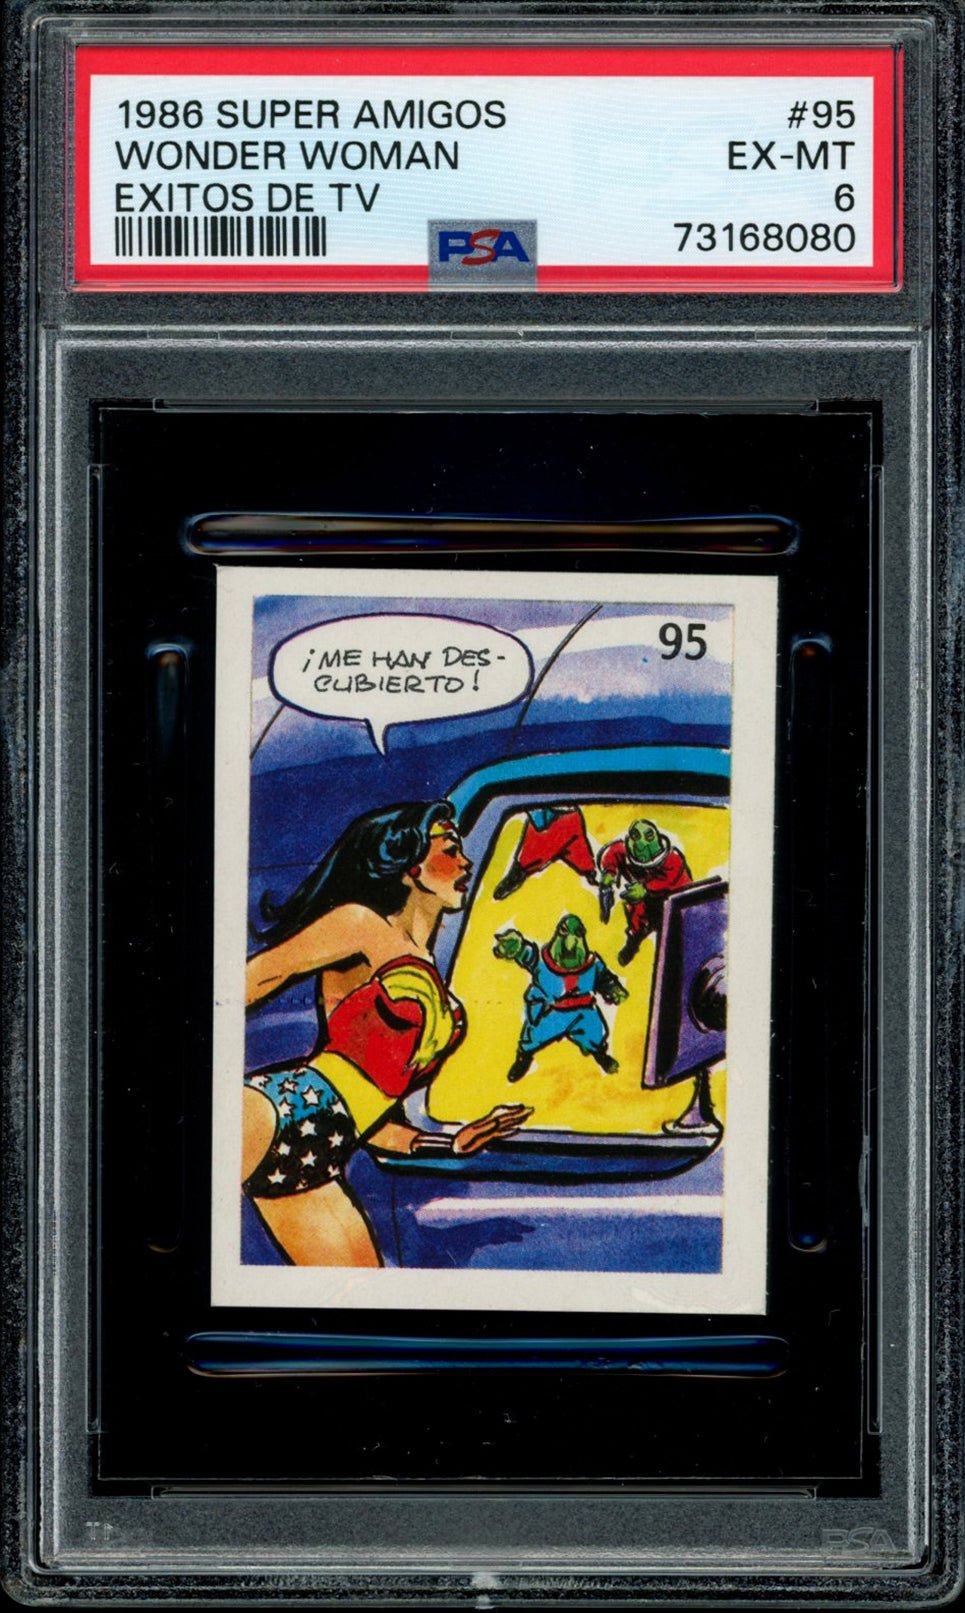 WONDER WOMAN PSA 6 1986 Reyauca Super Amigos Exitos de TV #95 DC Comics Base Graded Cards - Hobby Gems